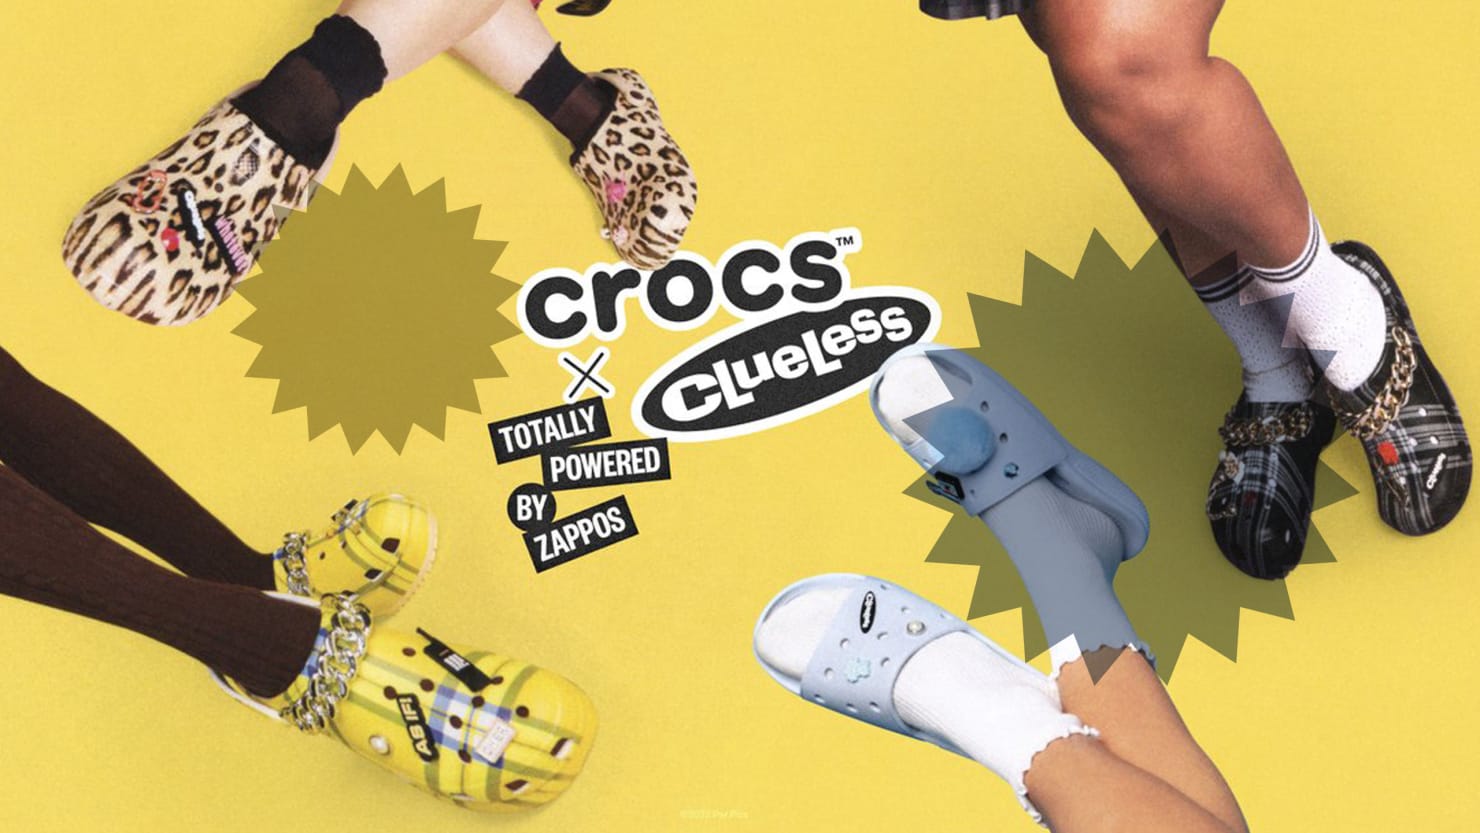 Crocs Clueless Collection Zappos